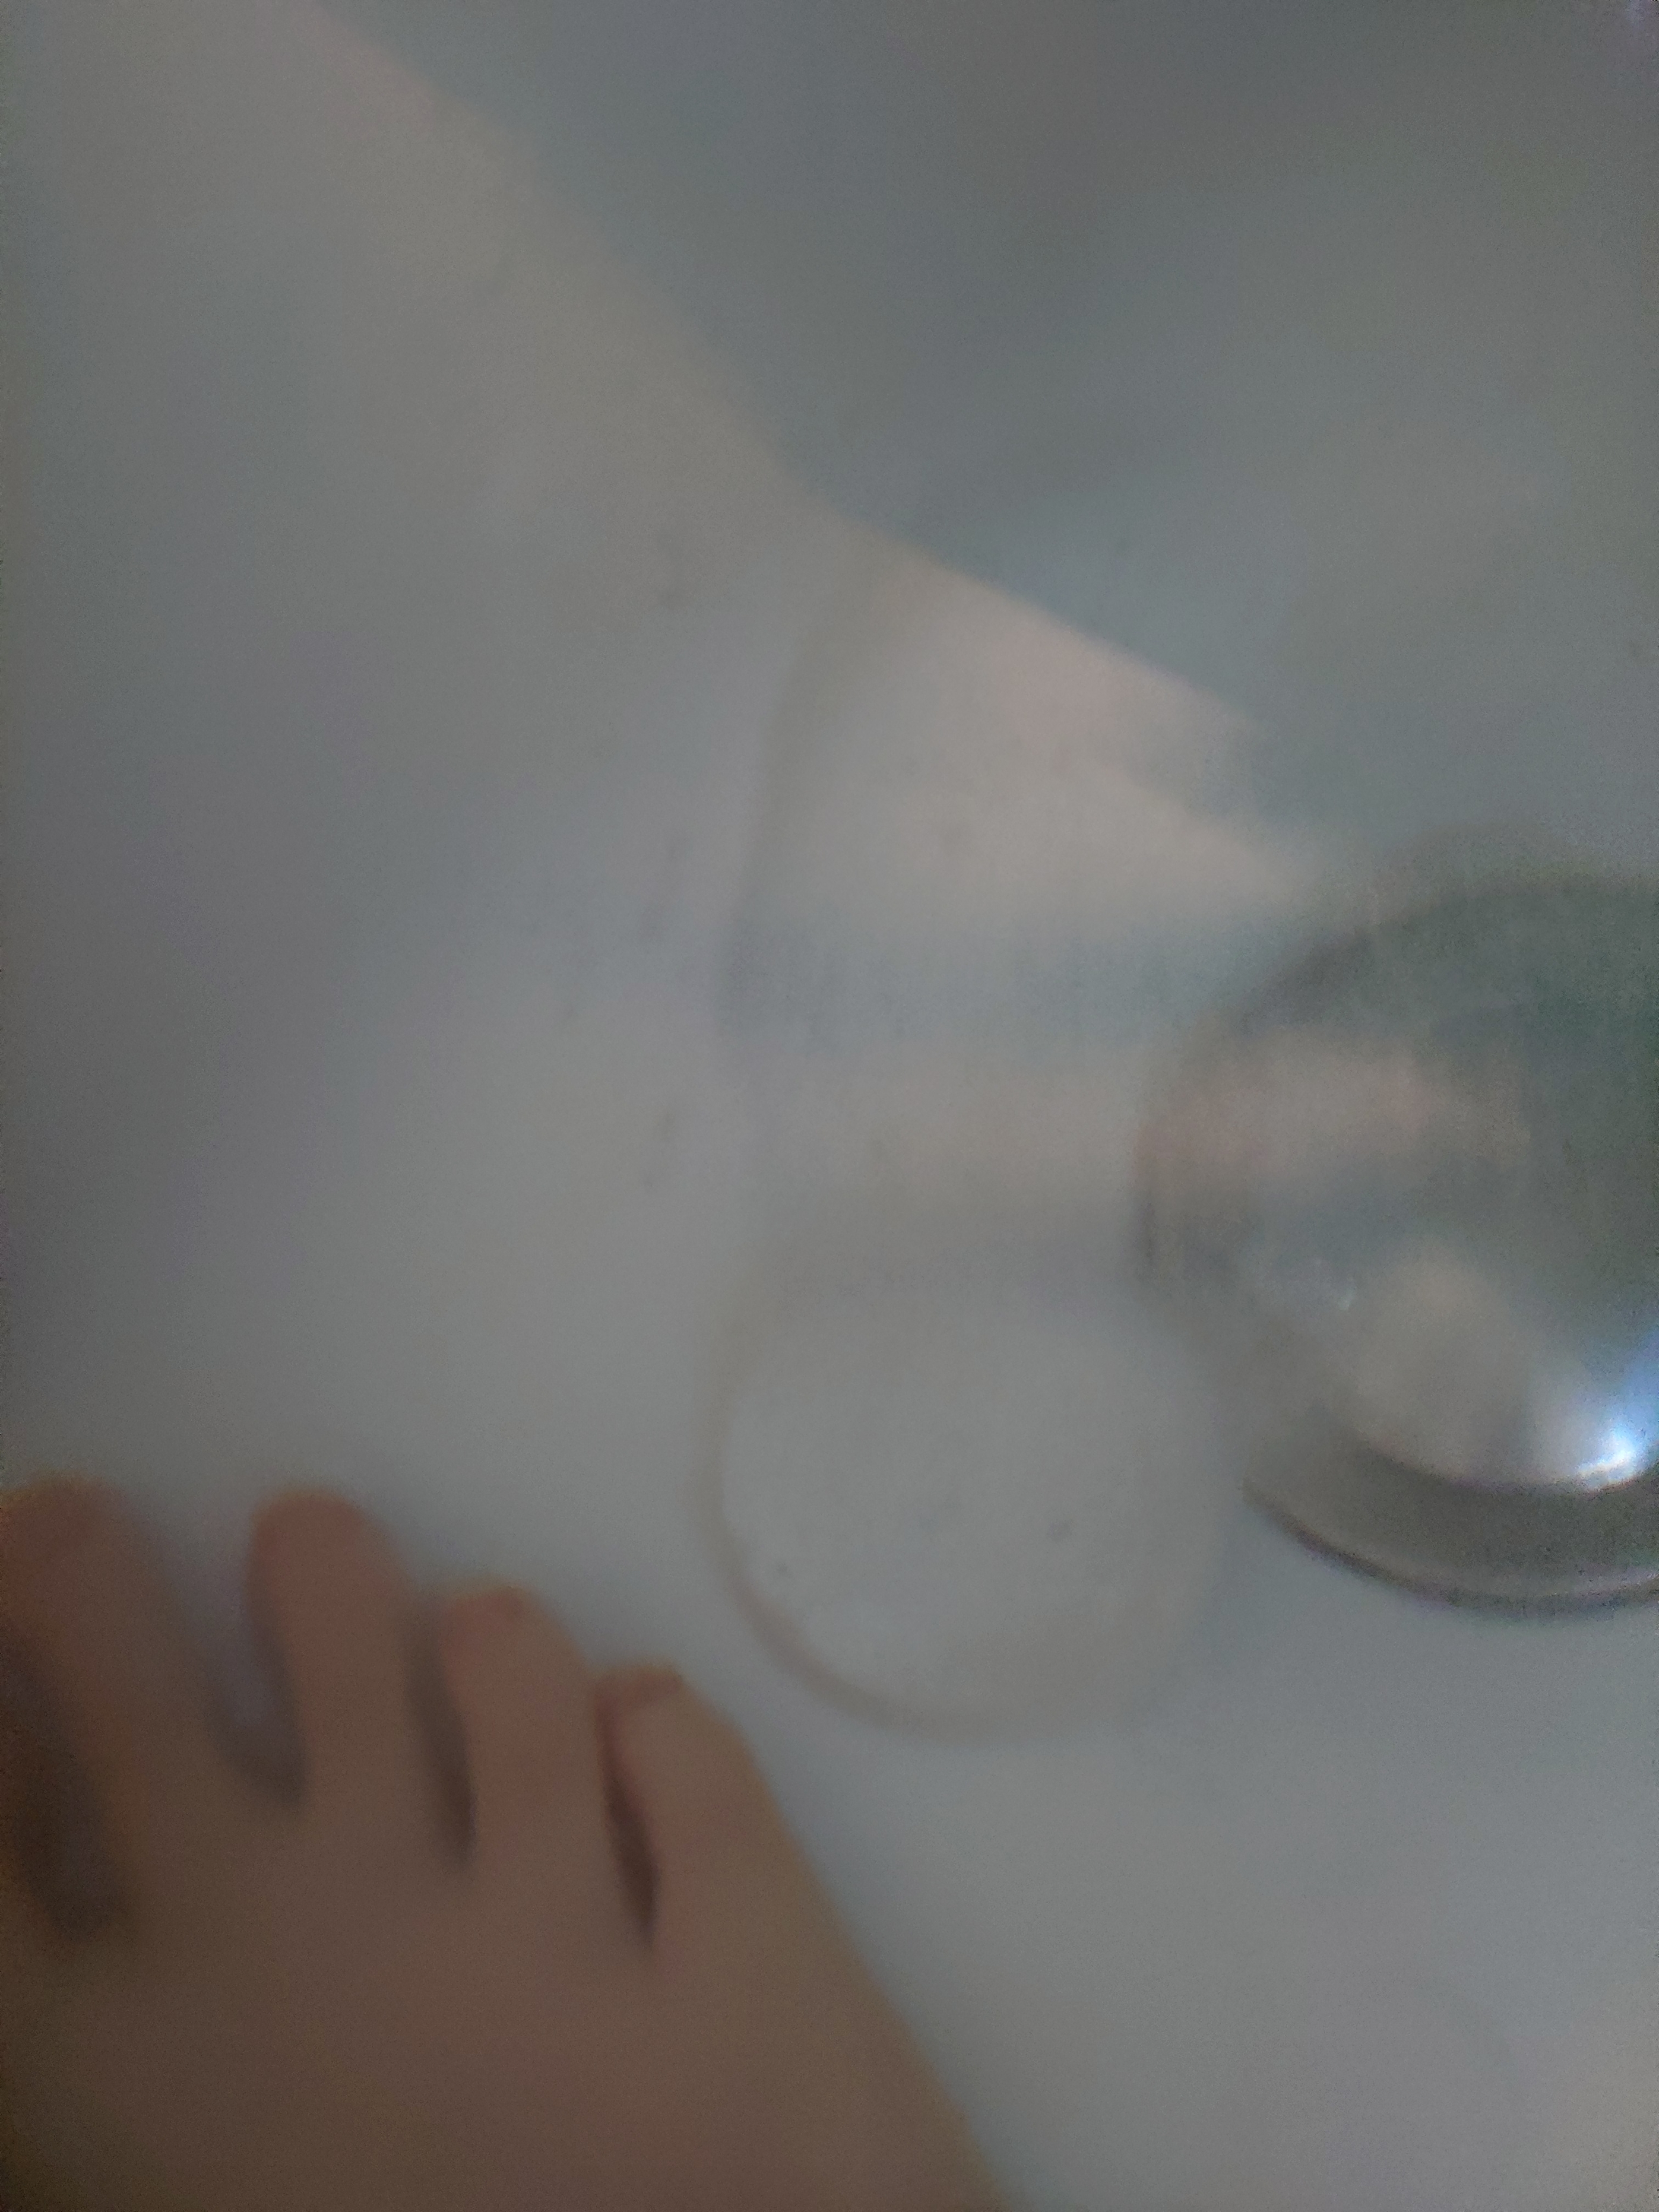 SUNCA(スンカ) 入浴剤 アソートの良い点・メリットに関するくみくみさんの口コミ画像3